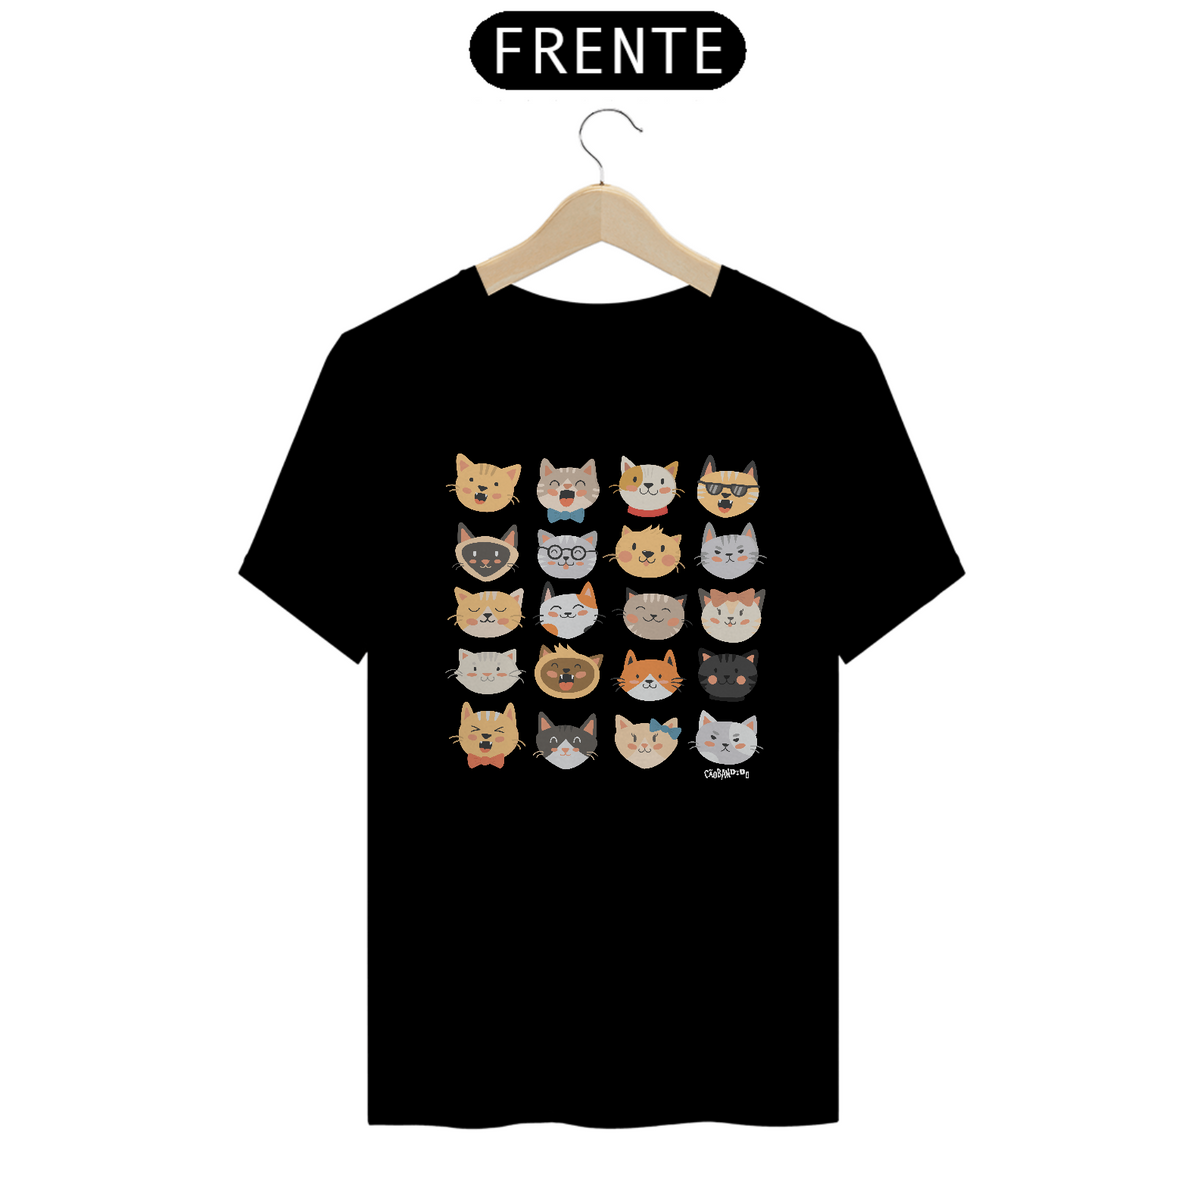 Nome do produto: Camiseta Cats Emoticons